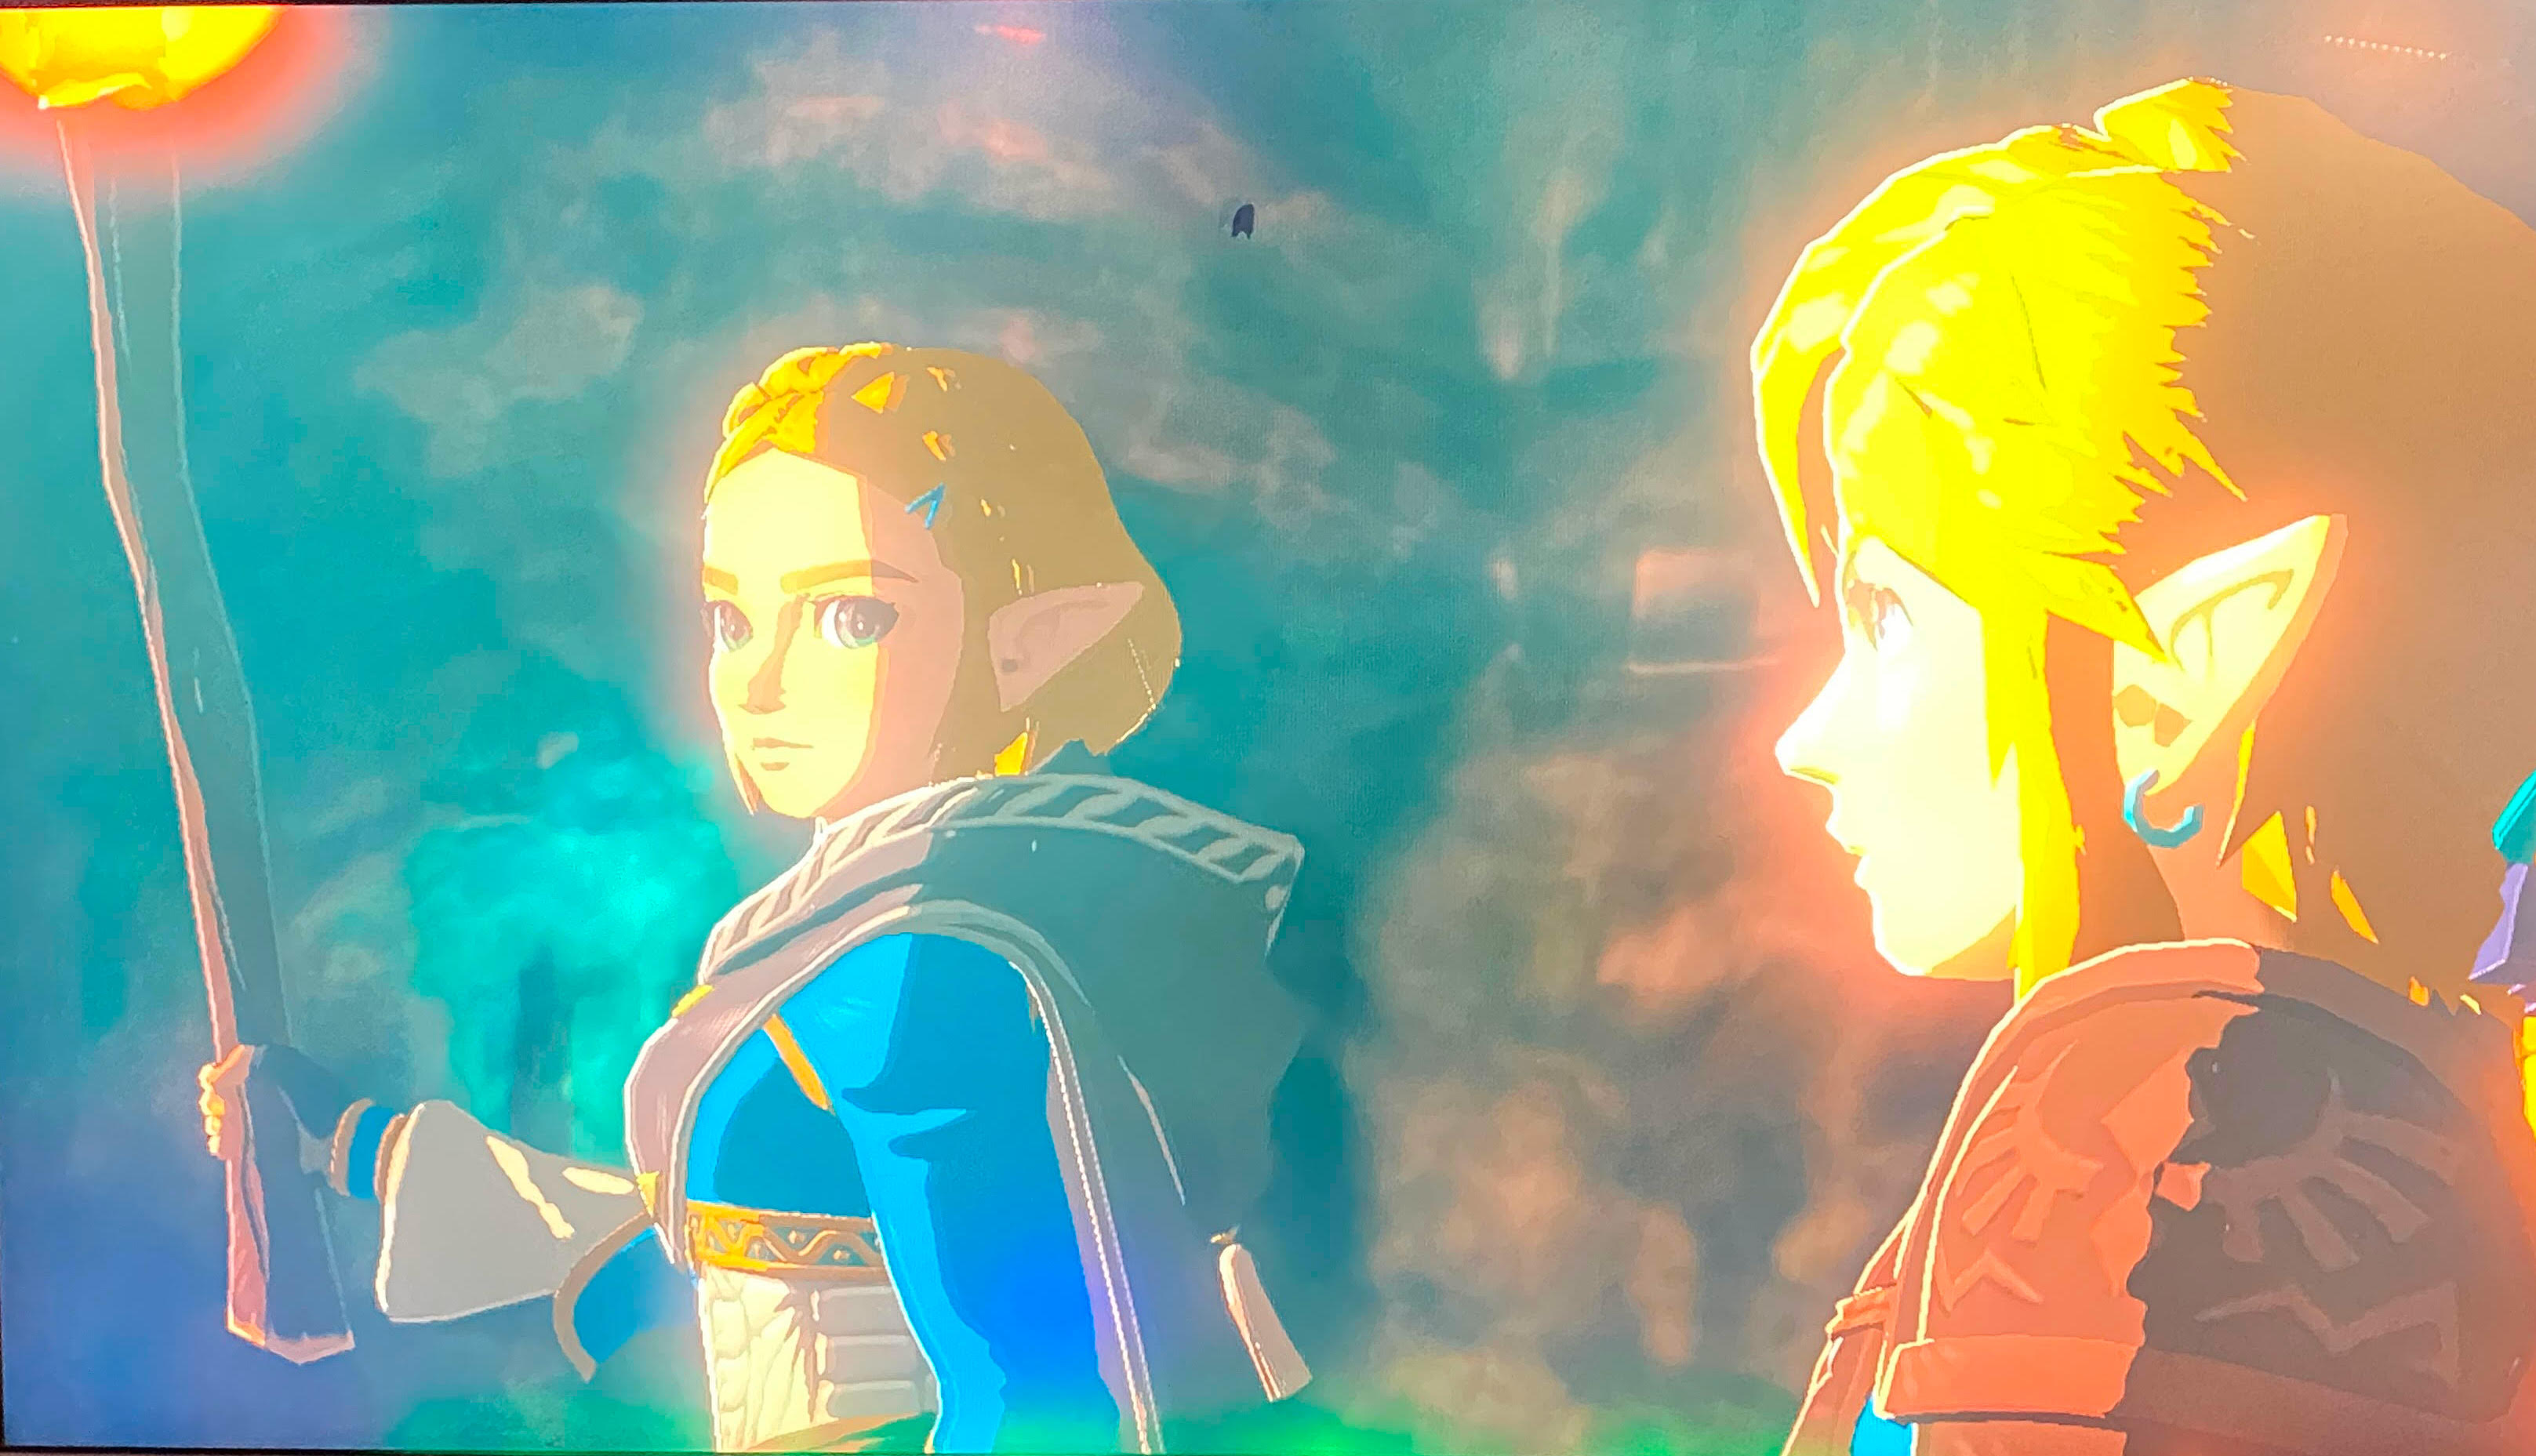 Zelda looks great!